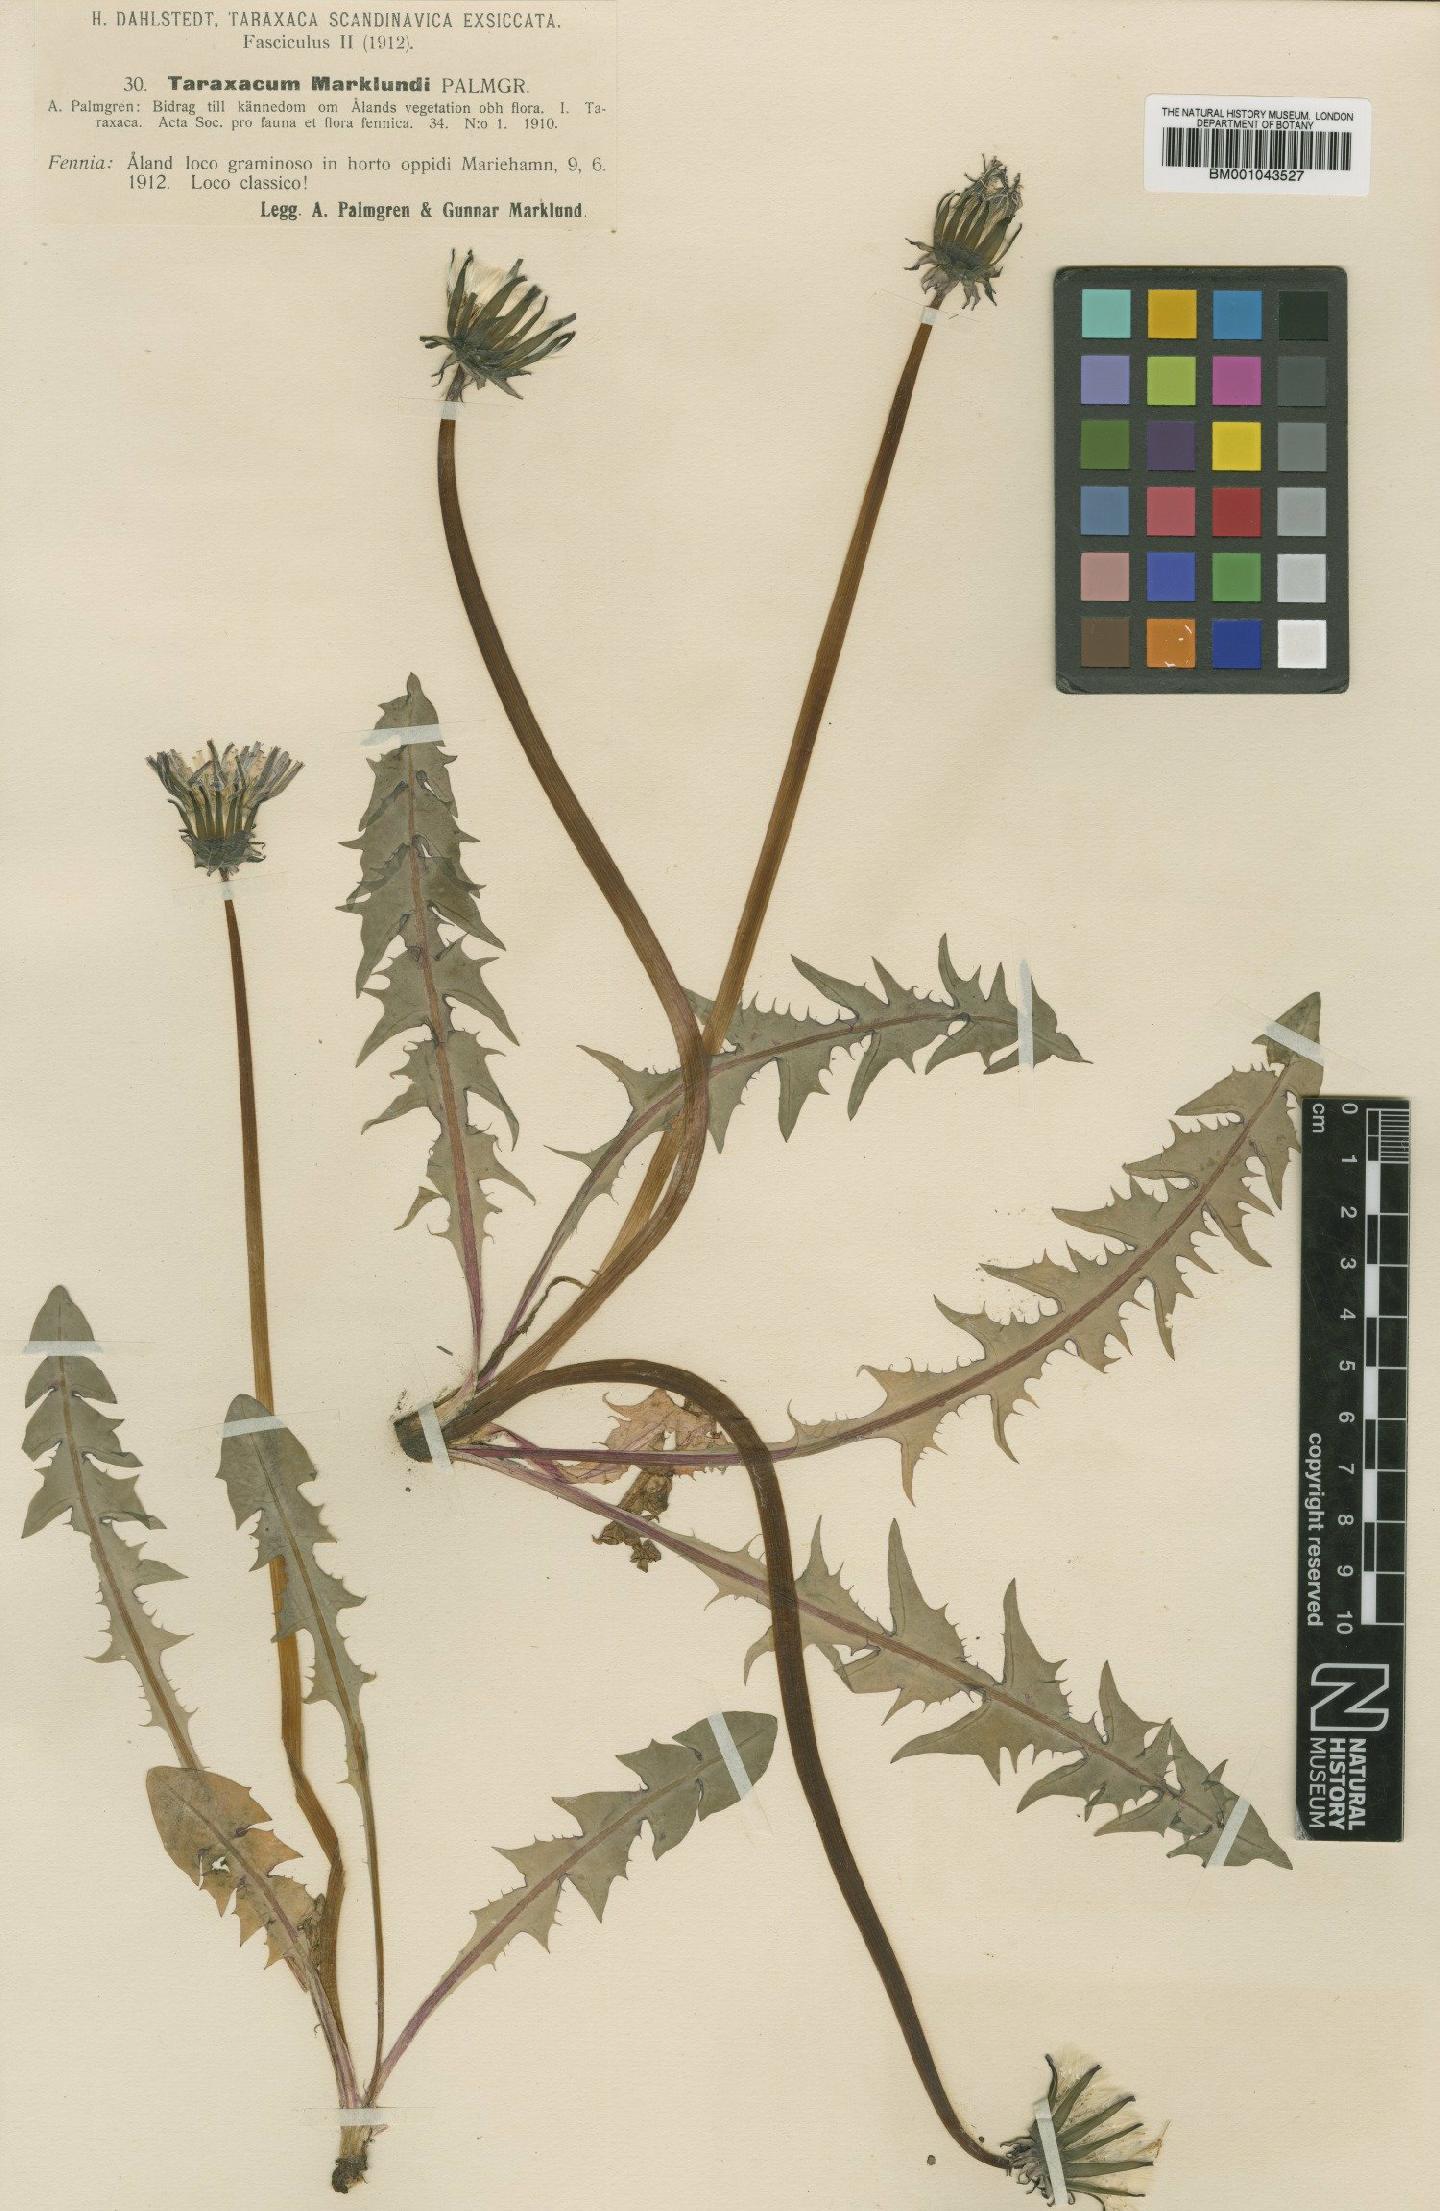 To NHMUK collection (Taraxacum marklundii Palmgr; TYPE; NHMUK:ecatalogue:1999321)